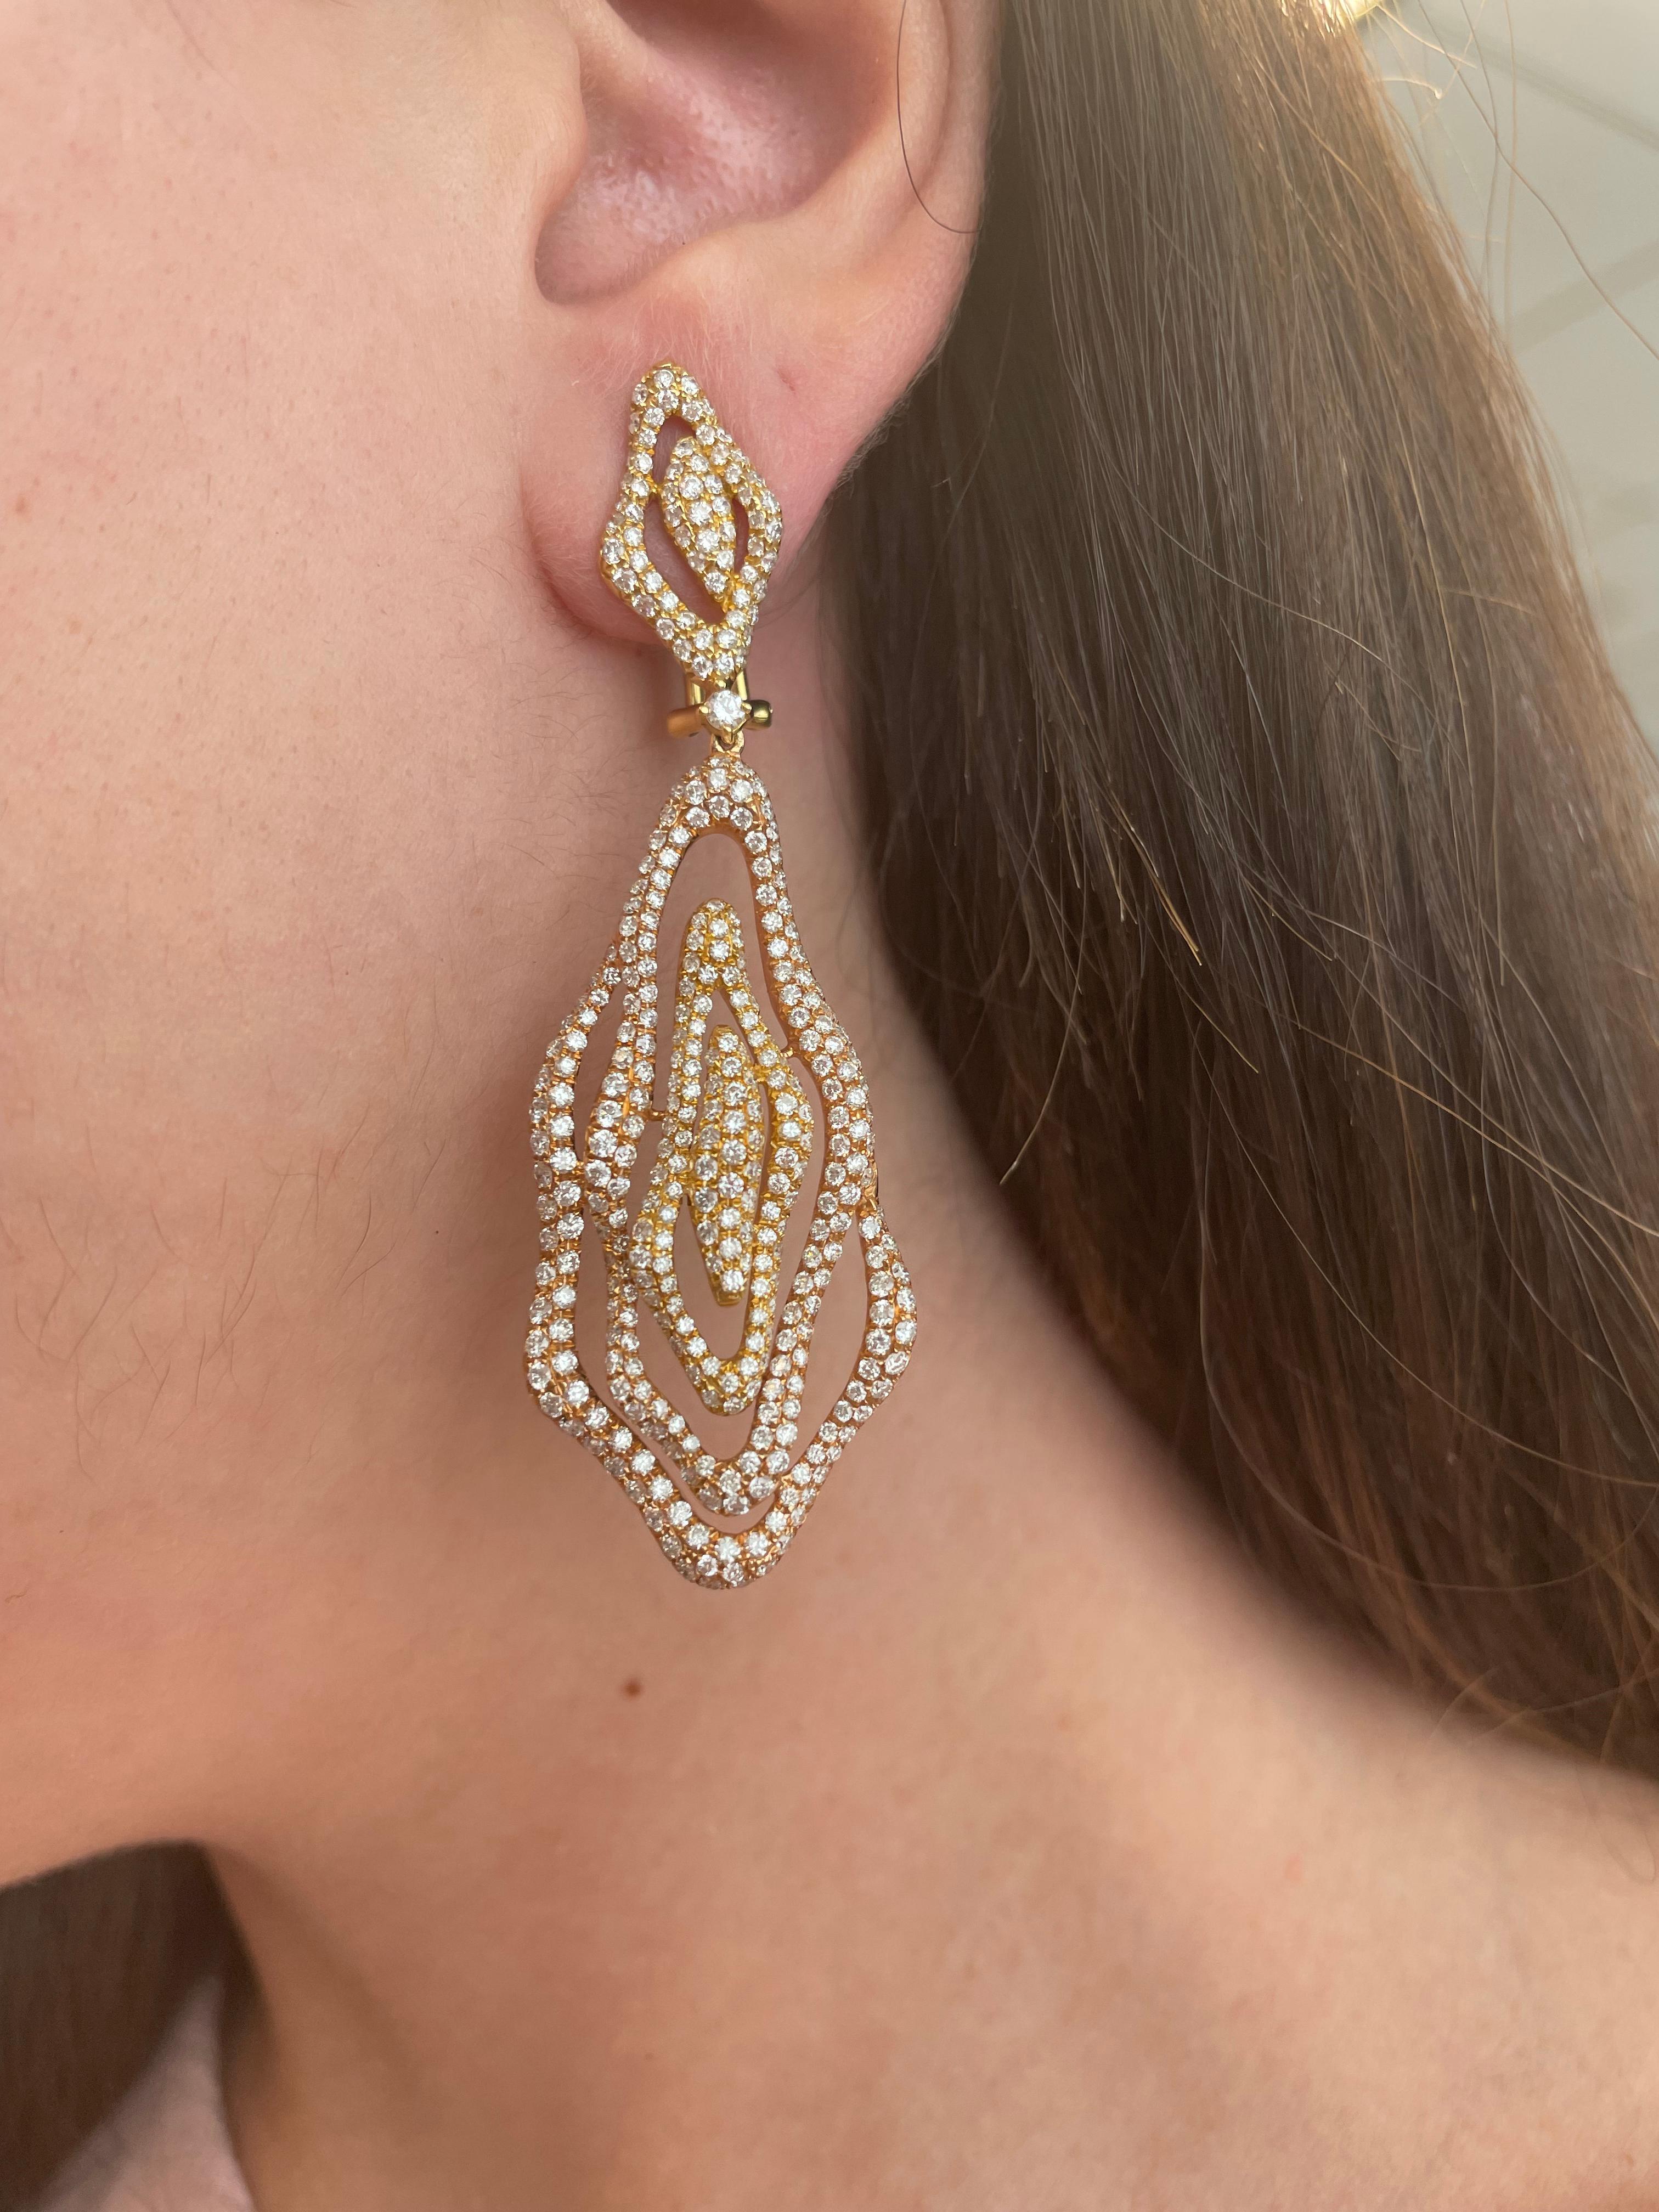 Wunderschöne zweifarbige Ohrringe mit Diamantbesatz.
5.75 ct. runde Brillanten, ungefährer Farbgrad G/H und Reinheitsgrad VS2/SI1 Diamanten. 18 Karat Rosé- und Gelbgold. 
Untergebracht mit einer aktuellen Schätzung von einem GIA G.G. auf Anfrage.